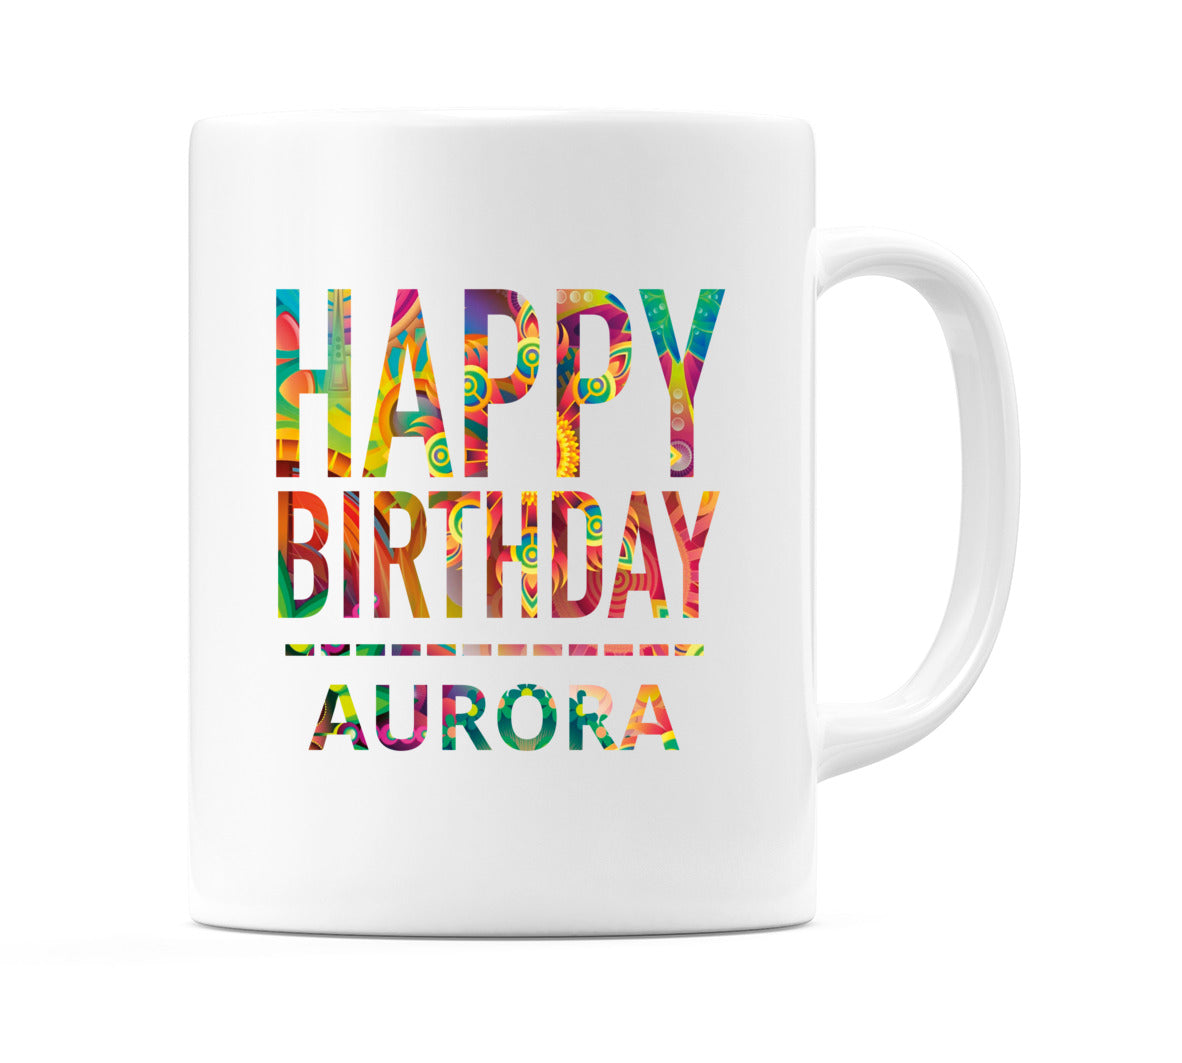 Happy Birthday Aurora (Tie Dye Effect) Mug Cup by WeDoMugs